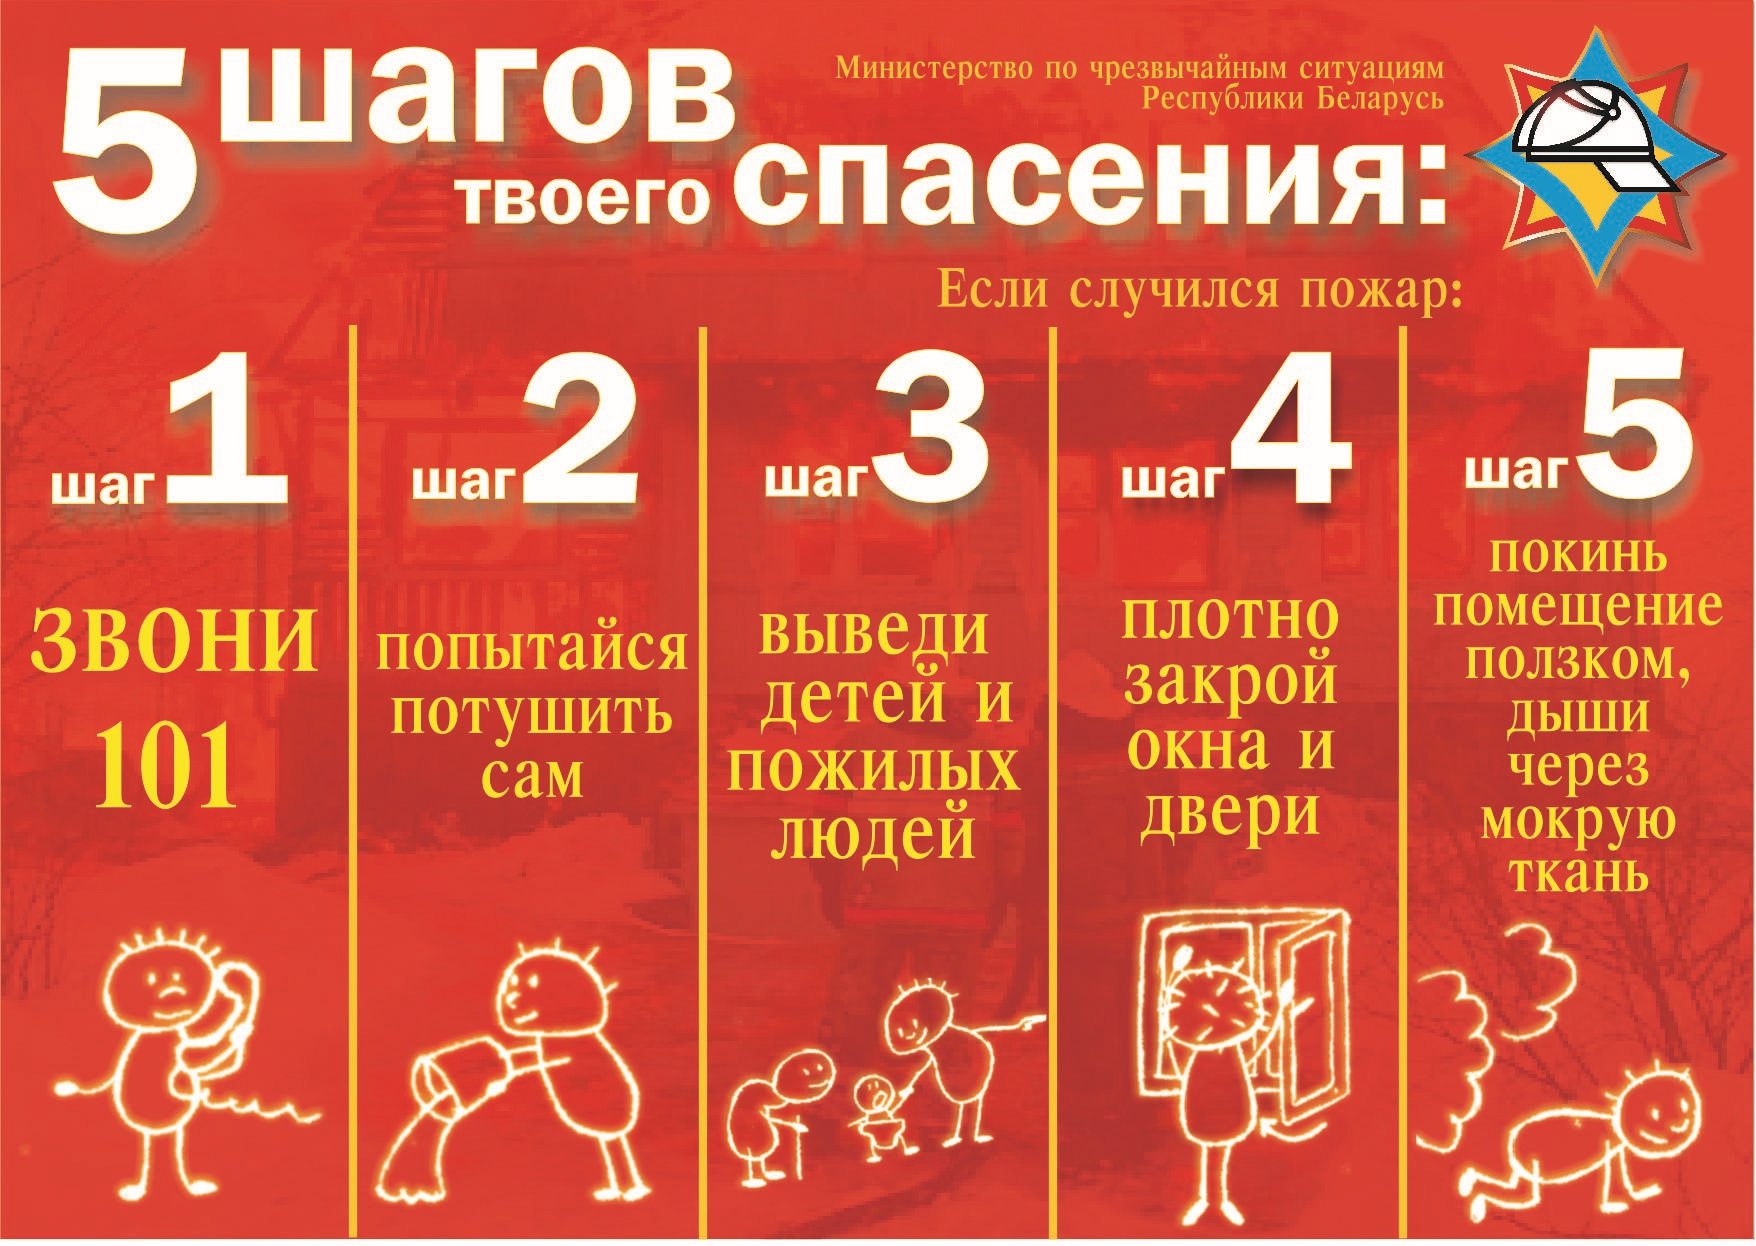 Как действовать во время пожара в многоэтажном доме - Российская газета